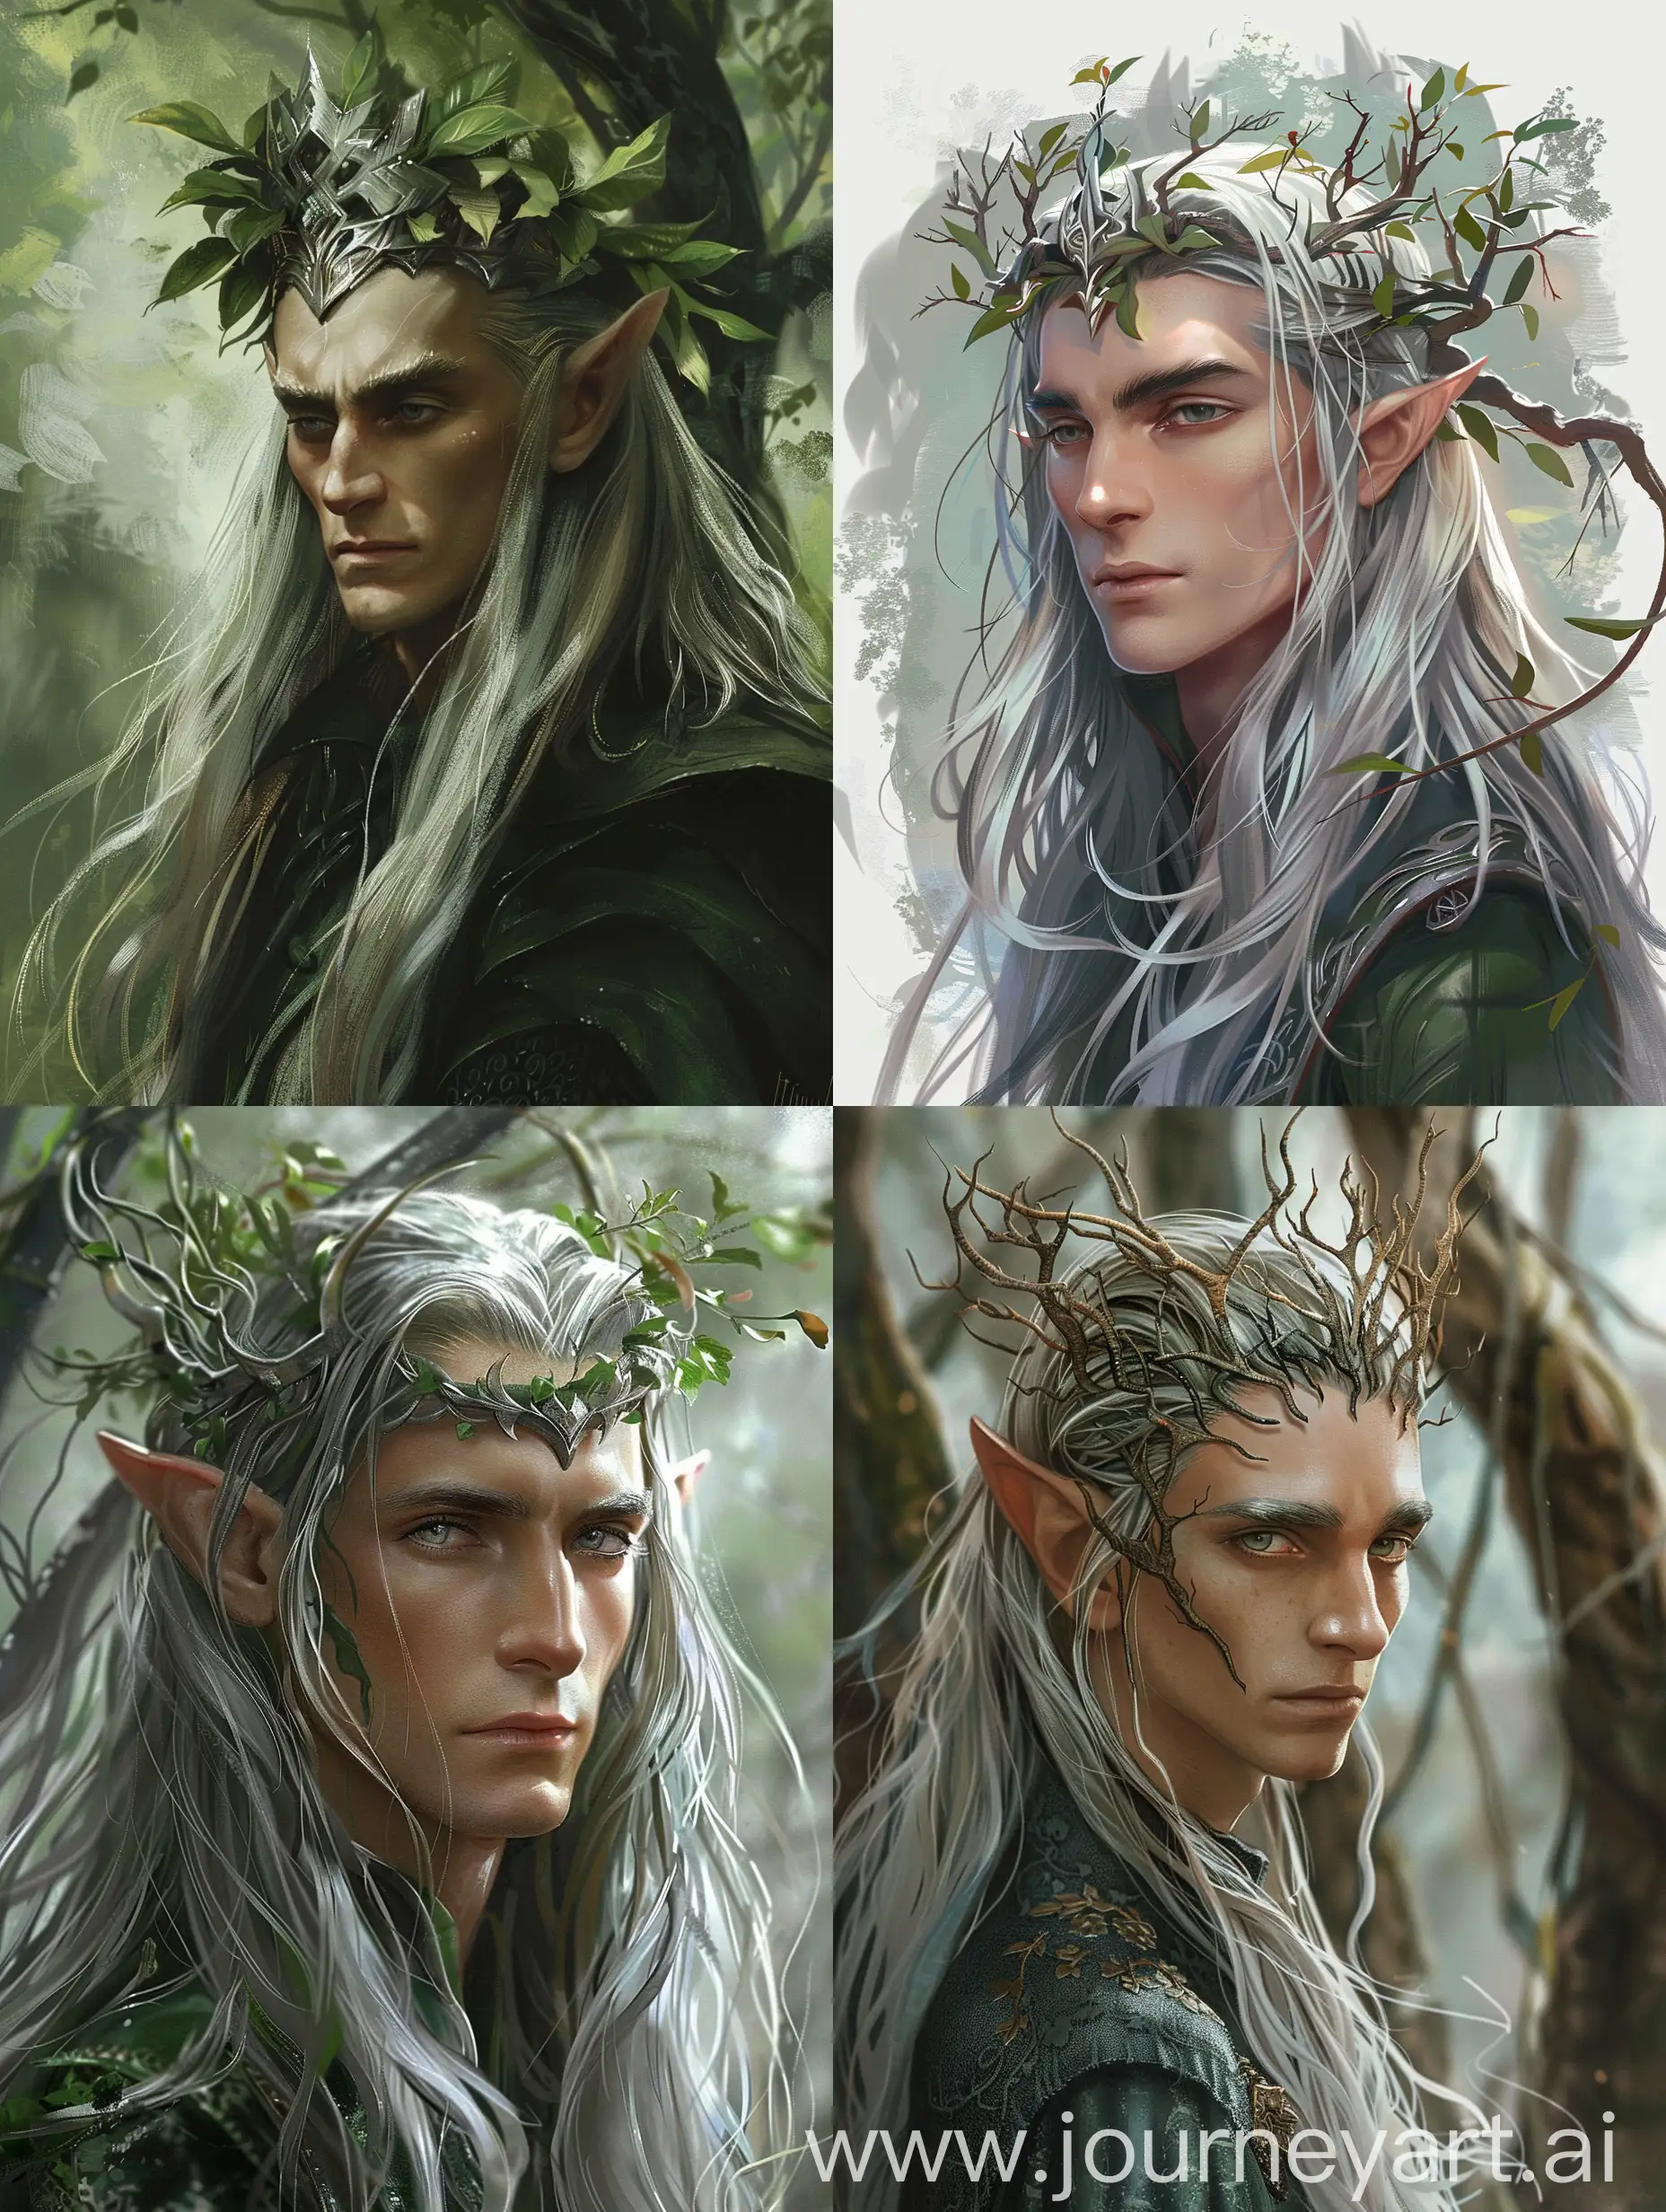 Elu Thingol aus Tolkiens Werken. Er ist ein großer Elb mit silbernem, langem Haar und grauen Augen. Er ist der König von Doriath, einem Waldreich. Elu Thingol ist streng, ernst und hochmütig gegenüber seinen Feinden, aber sein Volk liebt ihn. Seine Krone erinnert an den Wald selbst und er hat eine majestätische und edle Ausstrahlung wie eine hohe Buche. Er gilt als sehr gut aussehend.